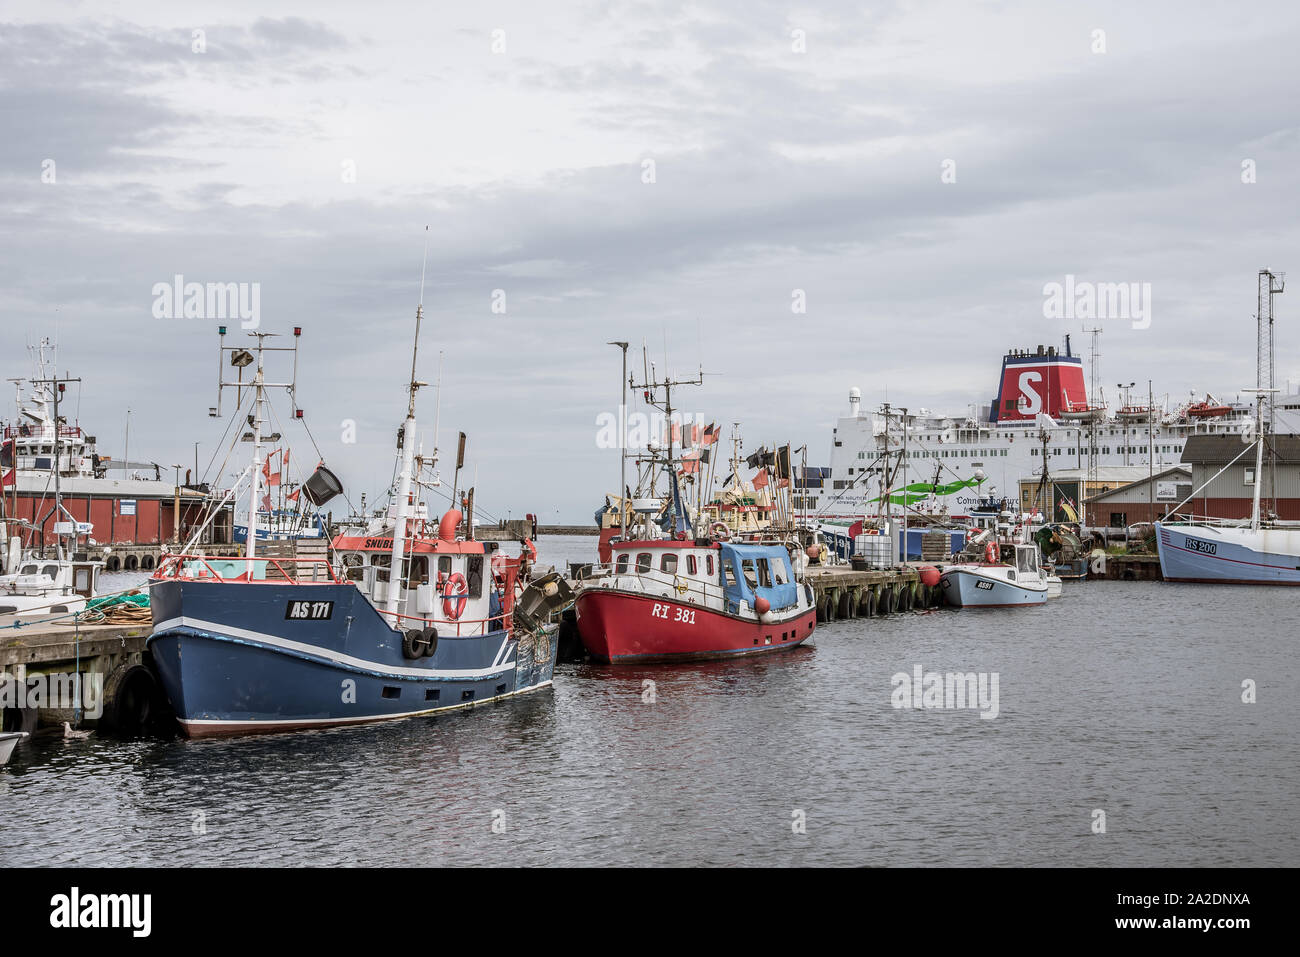 The car ferry Stena Nautika and fishing boats at the pier of Grenaa, Denmark, September 6, 2019 Stock Photo